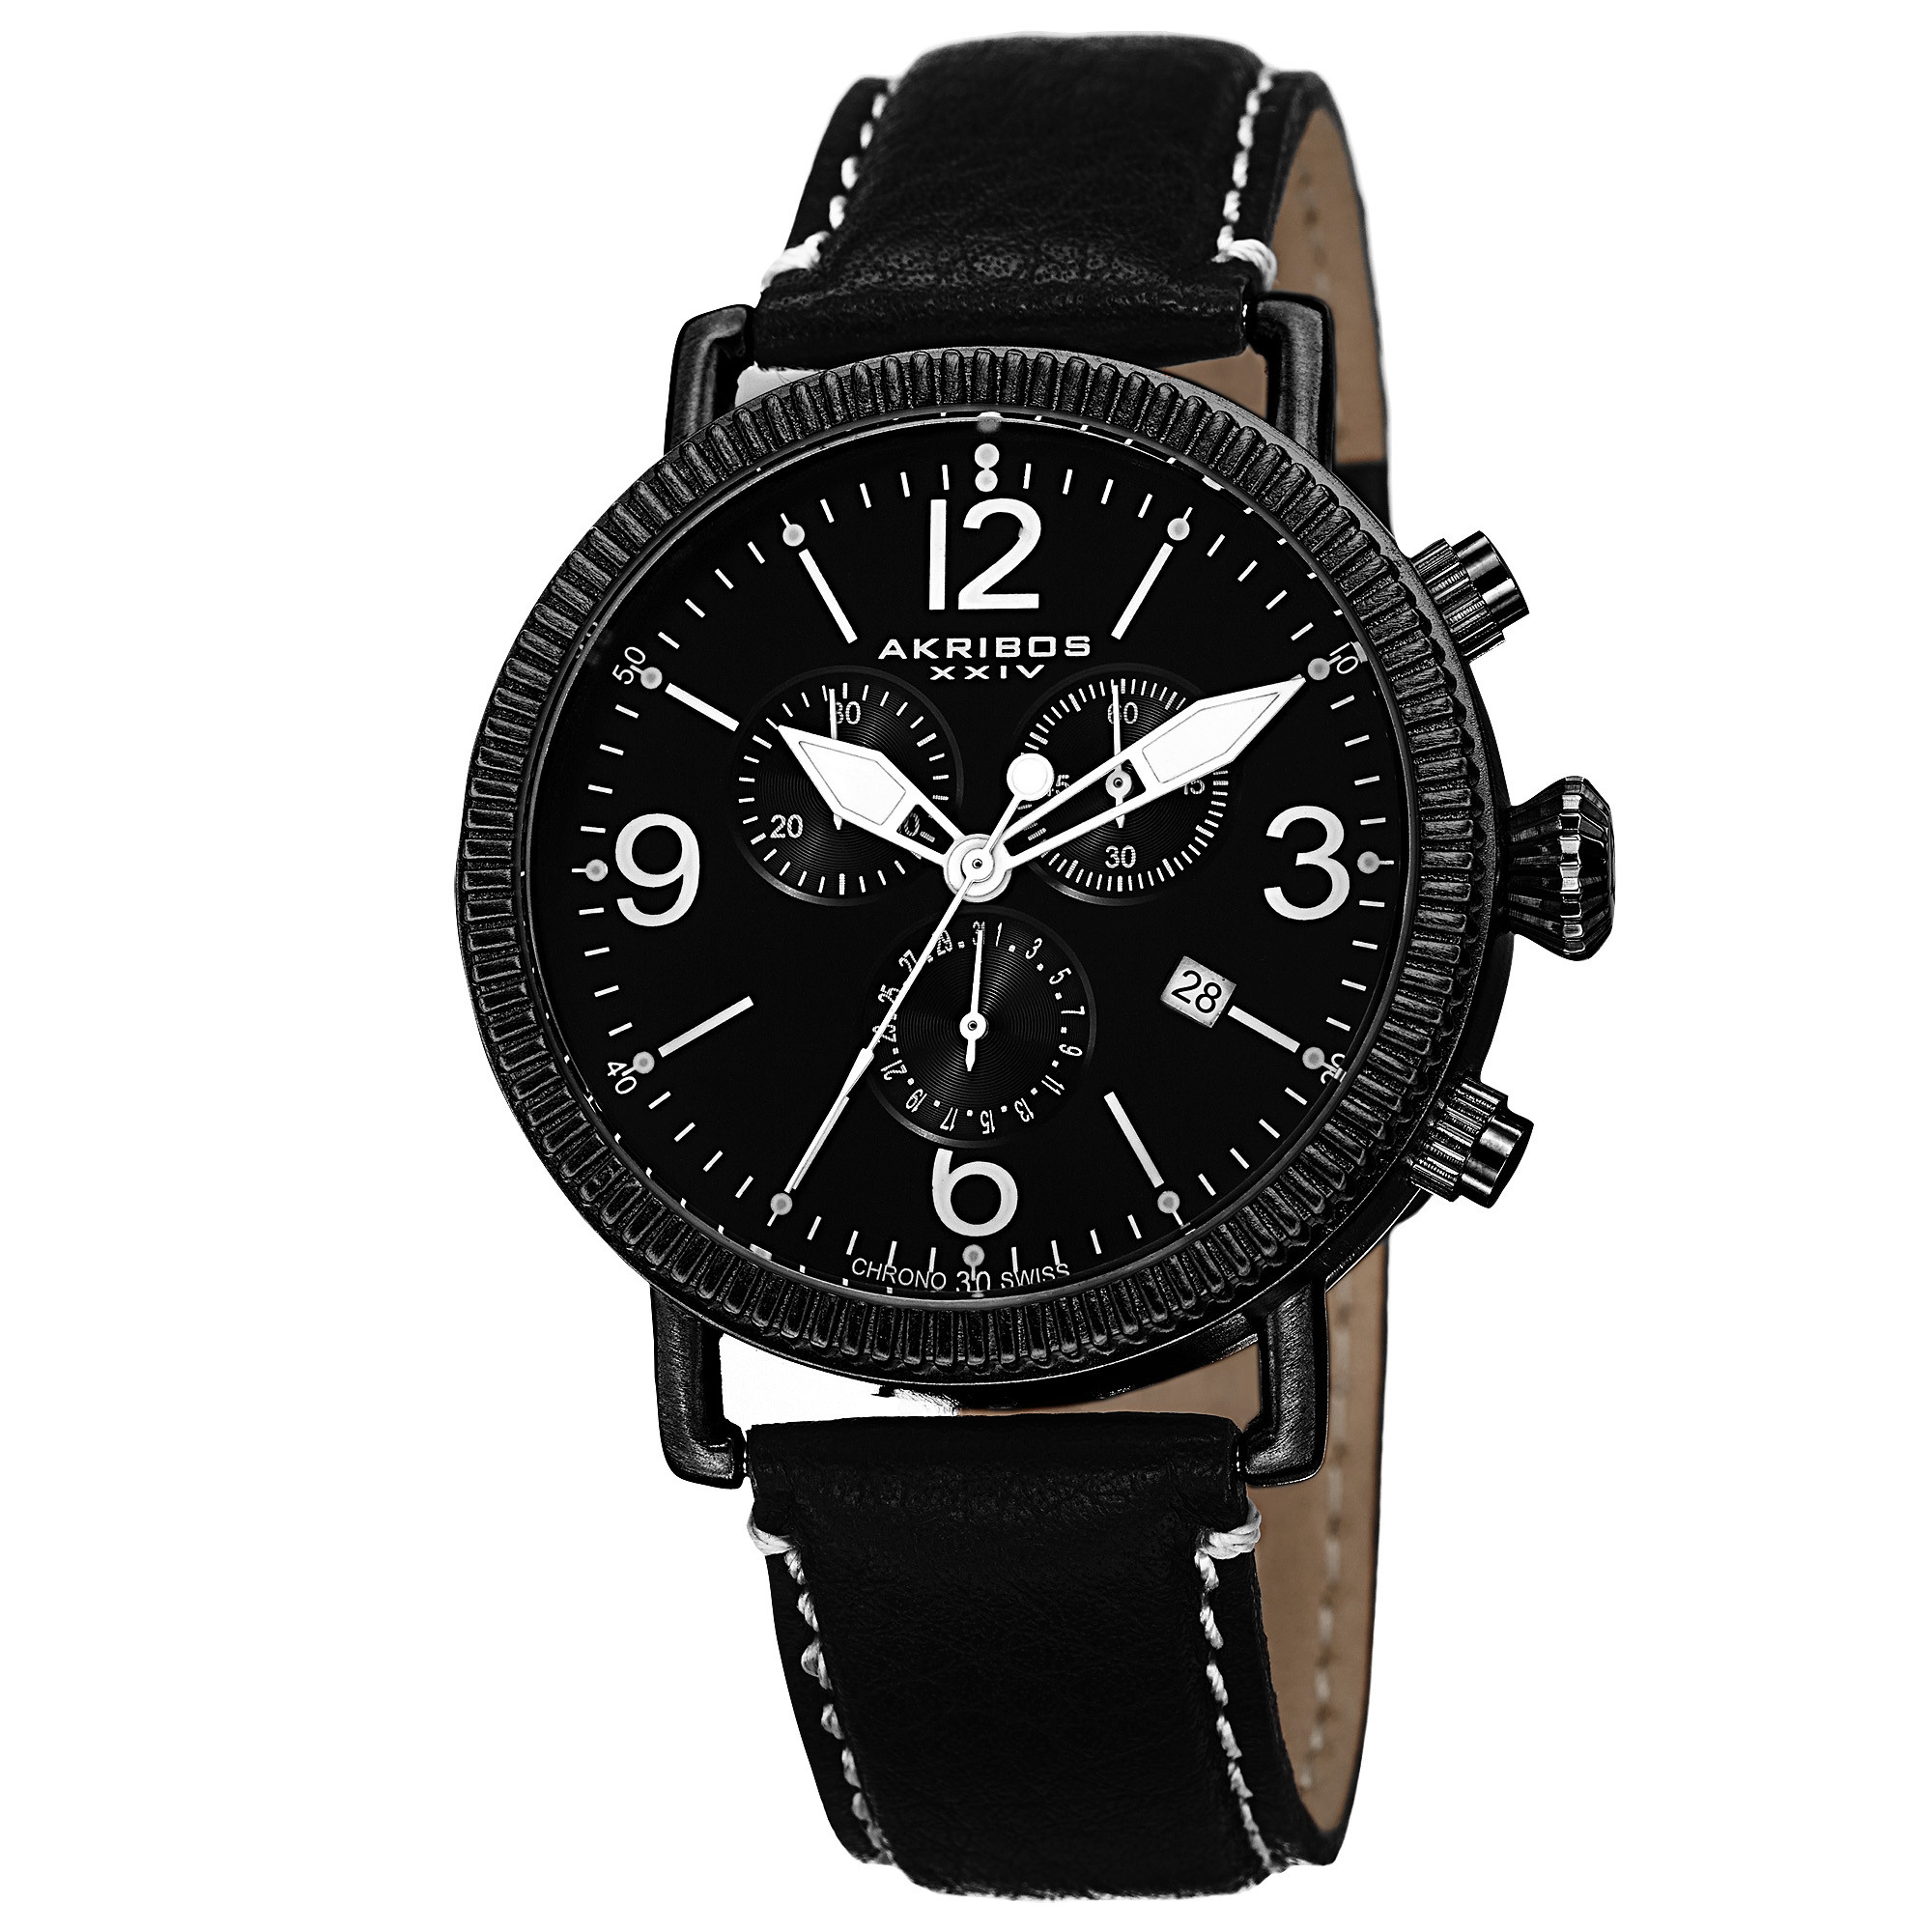 Akribos XXIV Black Dial Black Ion-plated Men's Watch AK753BK